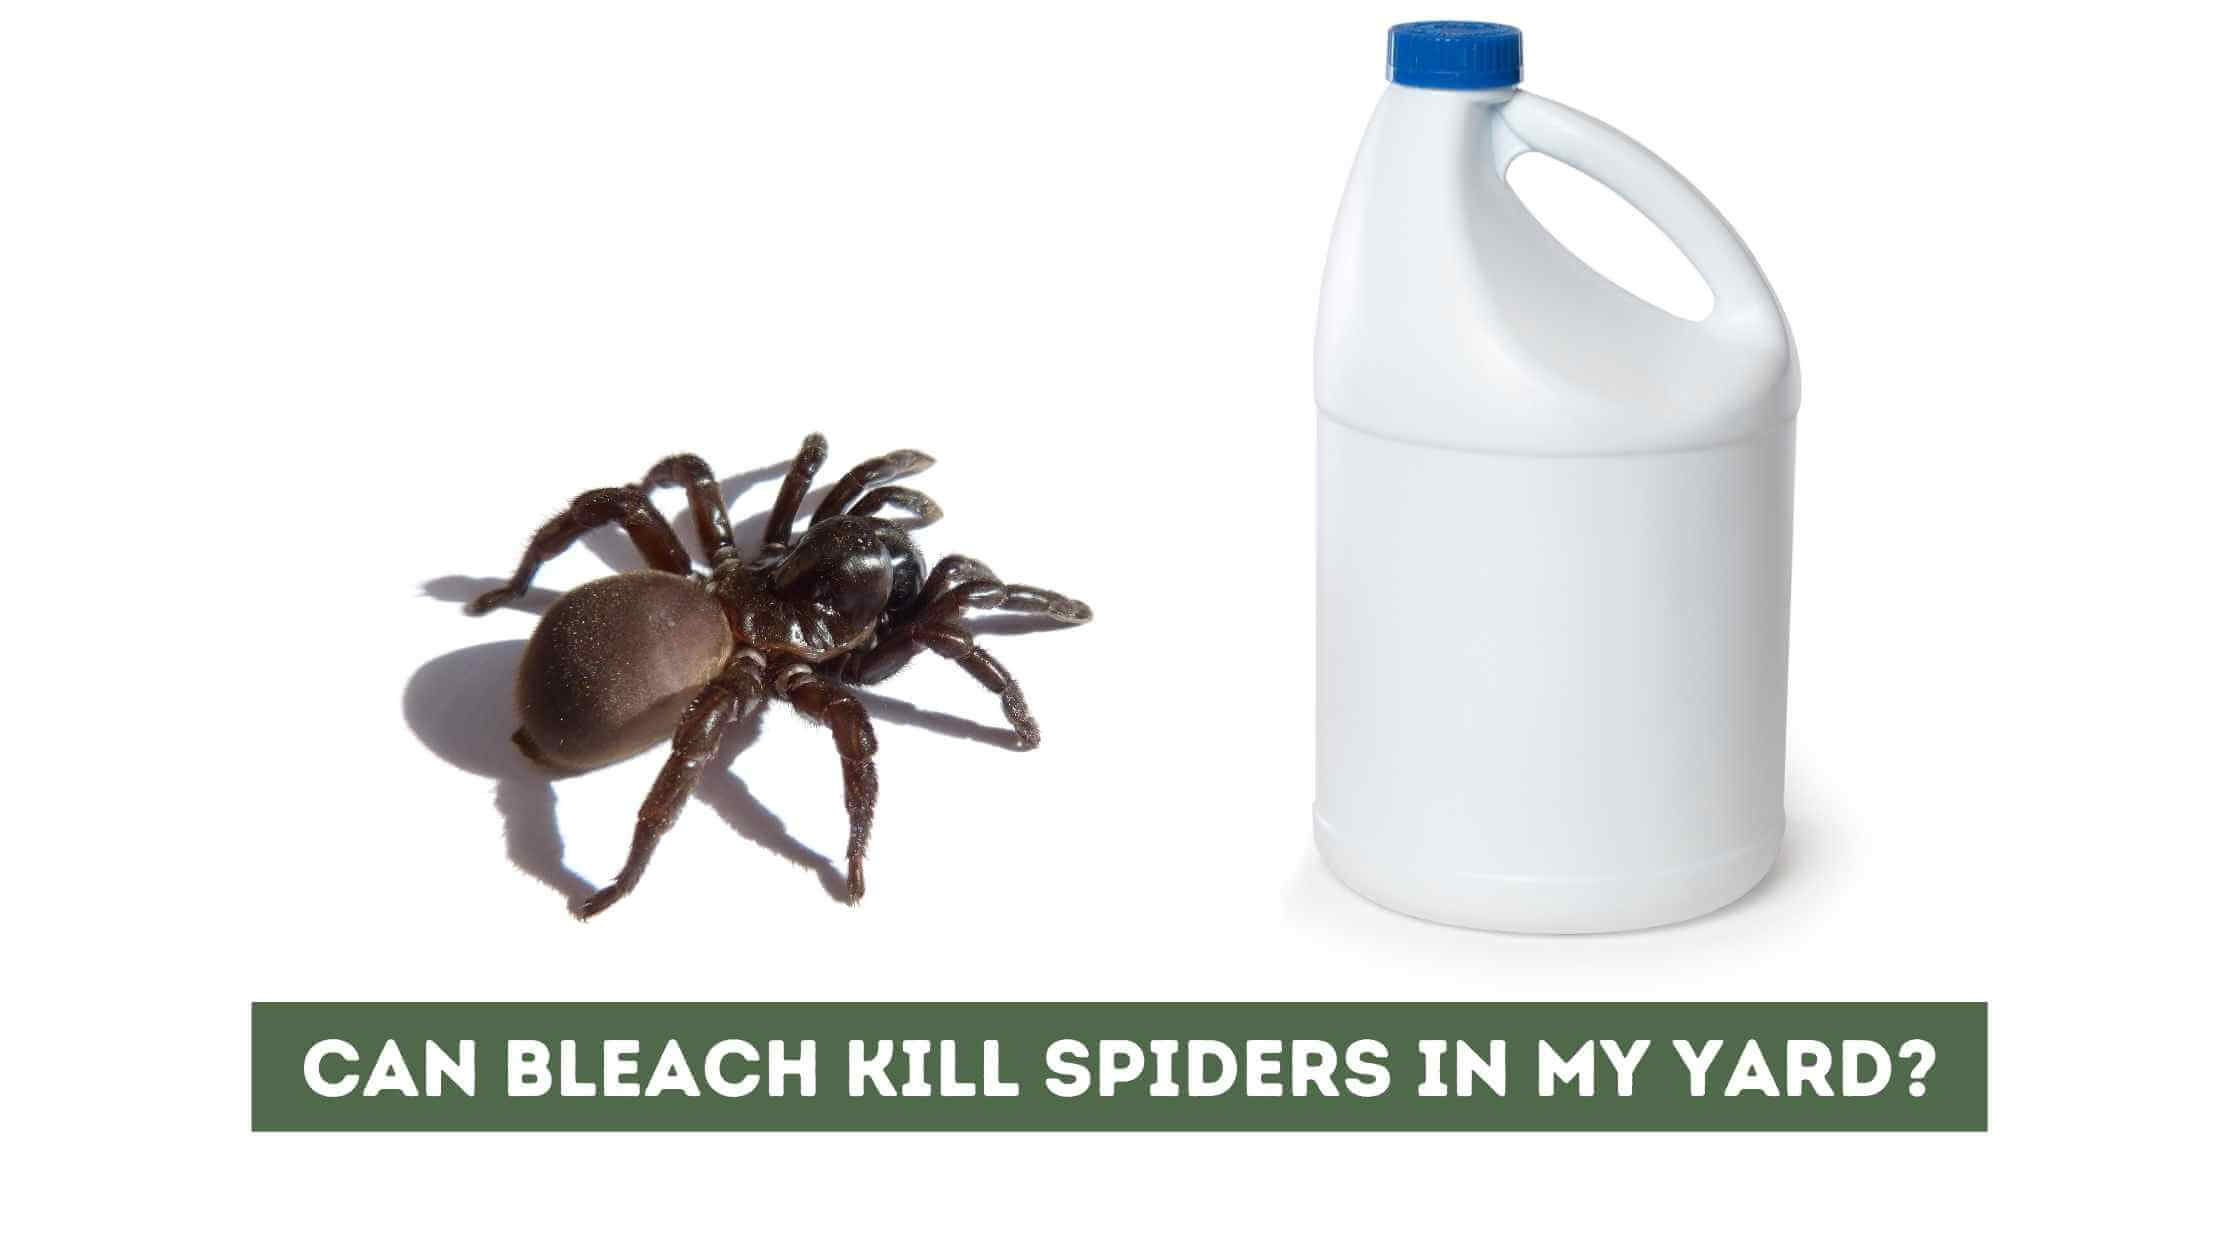 Can bleach kill spiders